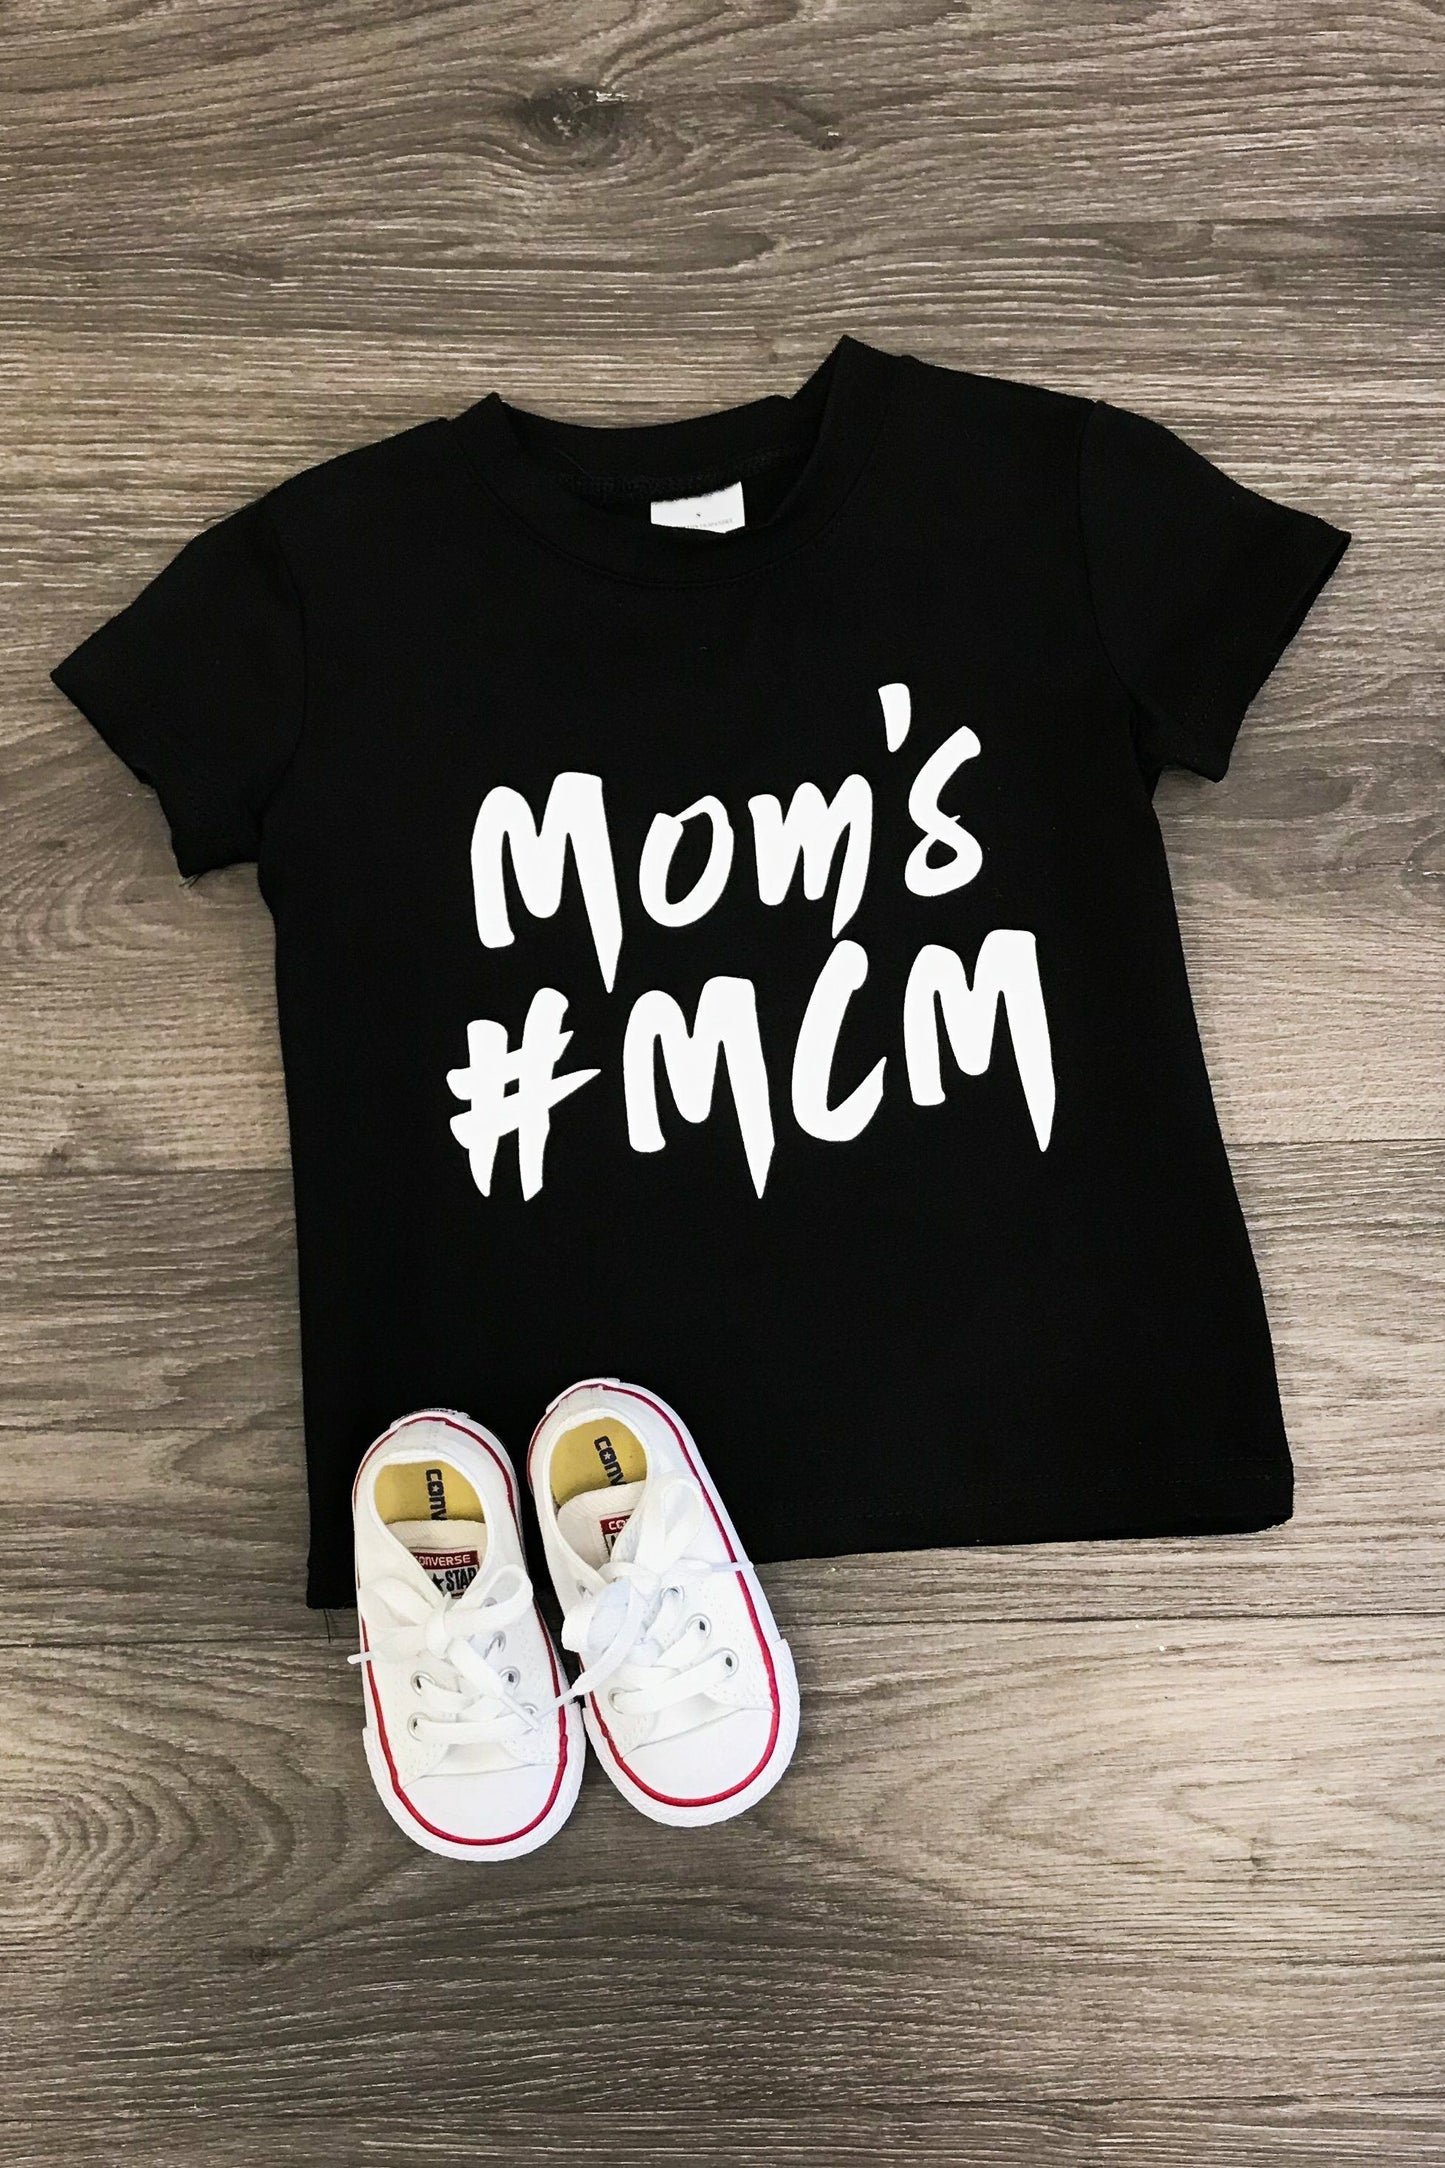 Mom's #MCM T- shirt - The Desert Paintbrush